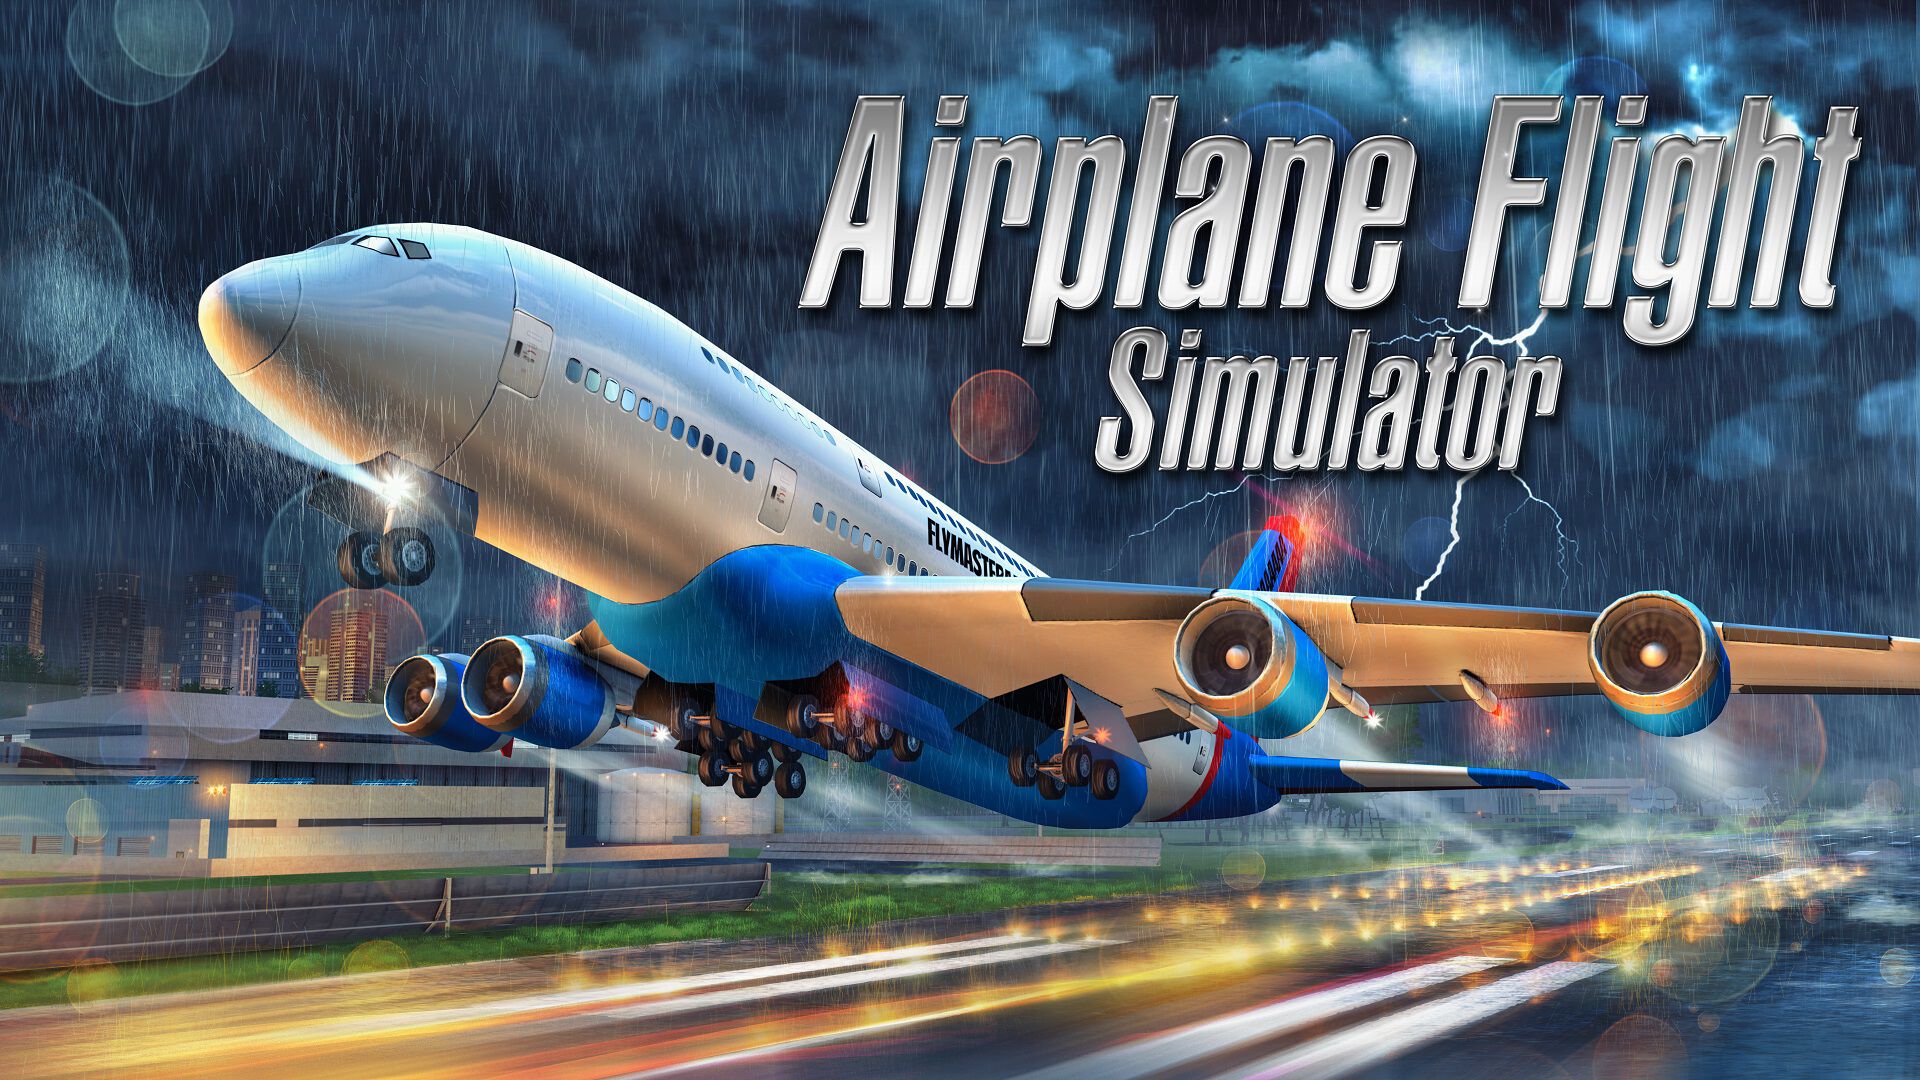 エアプレーン フライト シミュレーター (Airplane Flight Simulator)